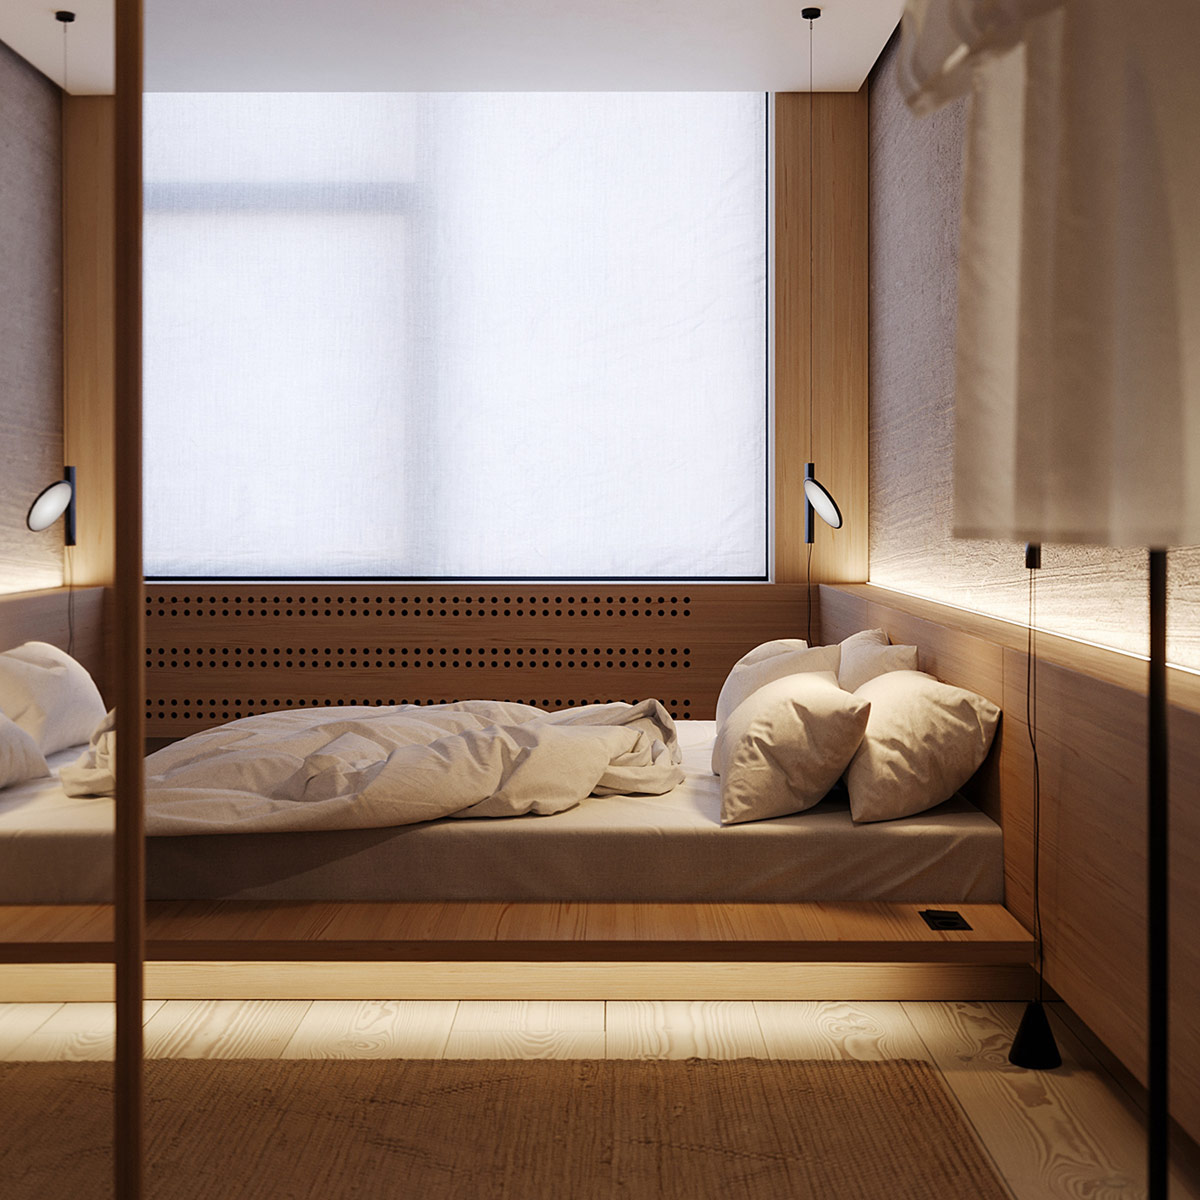 Mẫu thiết kế nội thất chung cư Eco Green với phòng ngủ tối giản ấm cúng